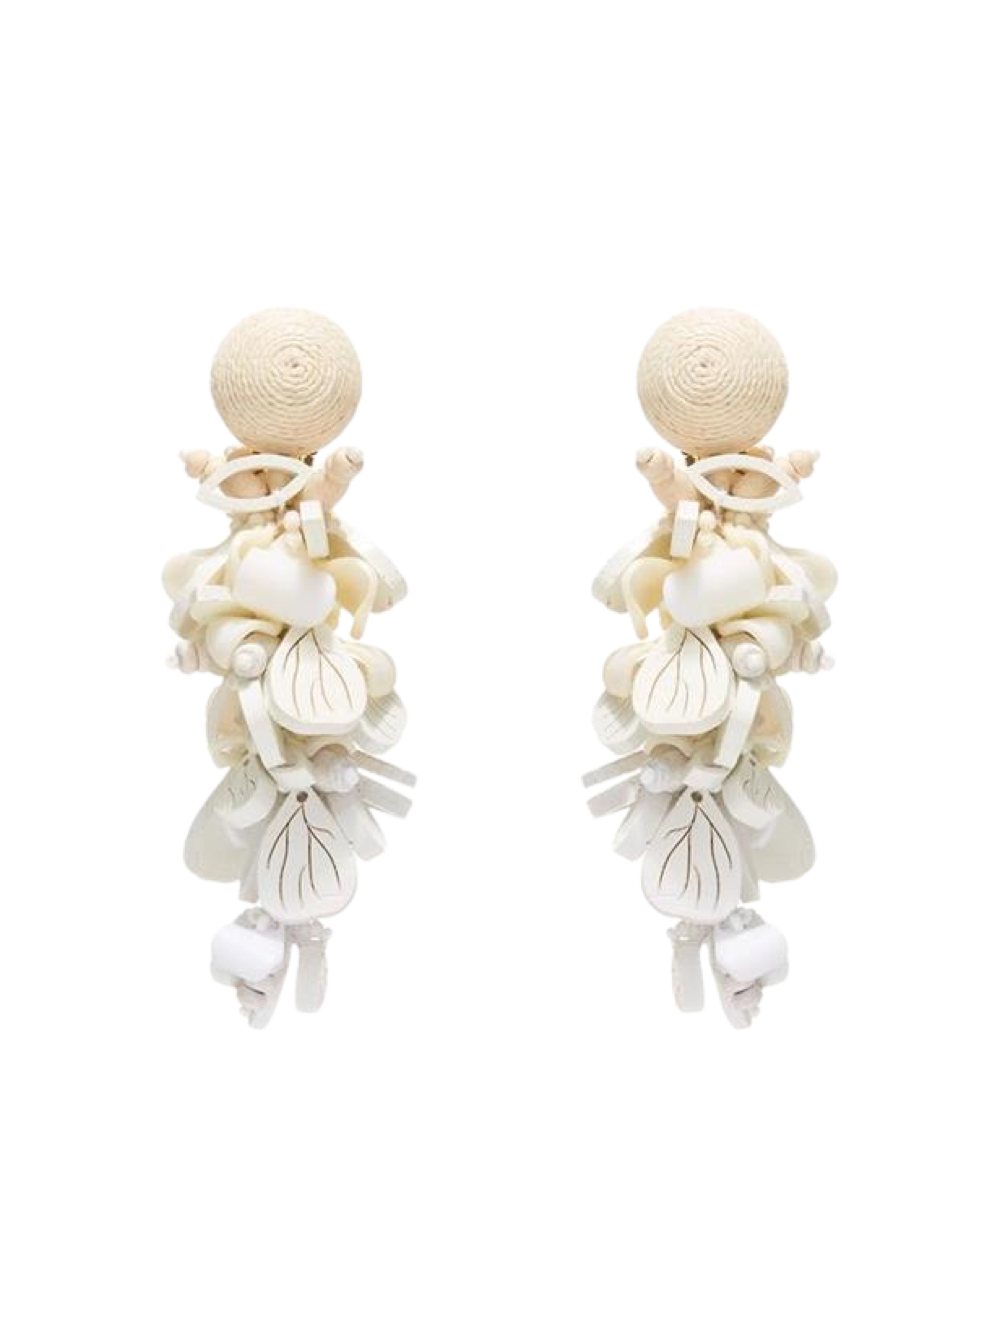 Oscar de la Renta Wooden Flower Cluster Earrings in Ivory